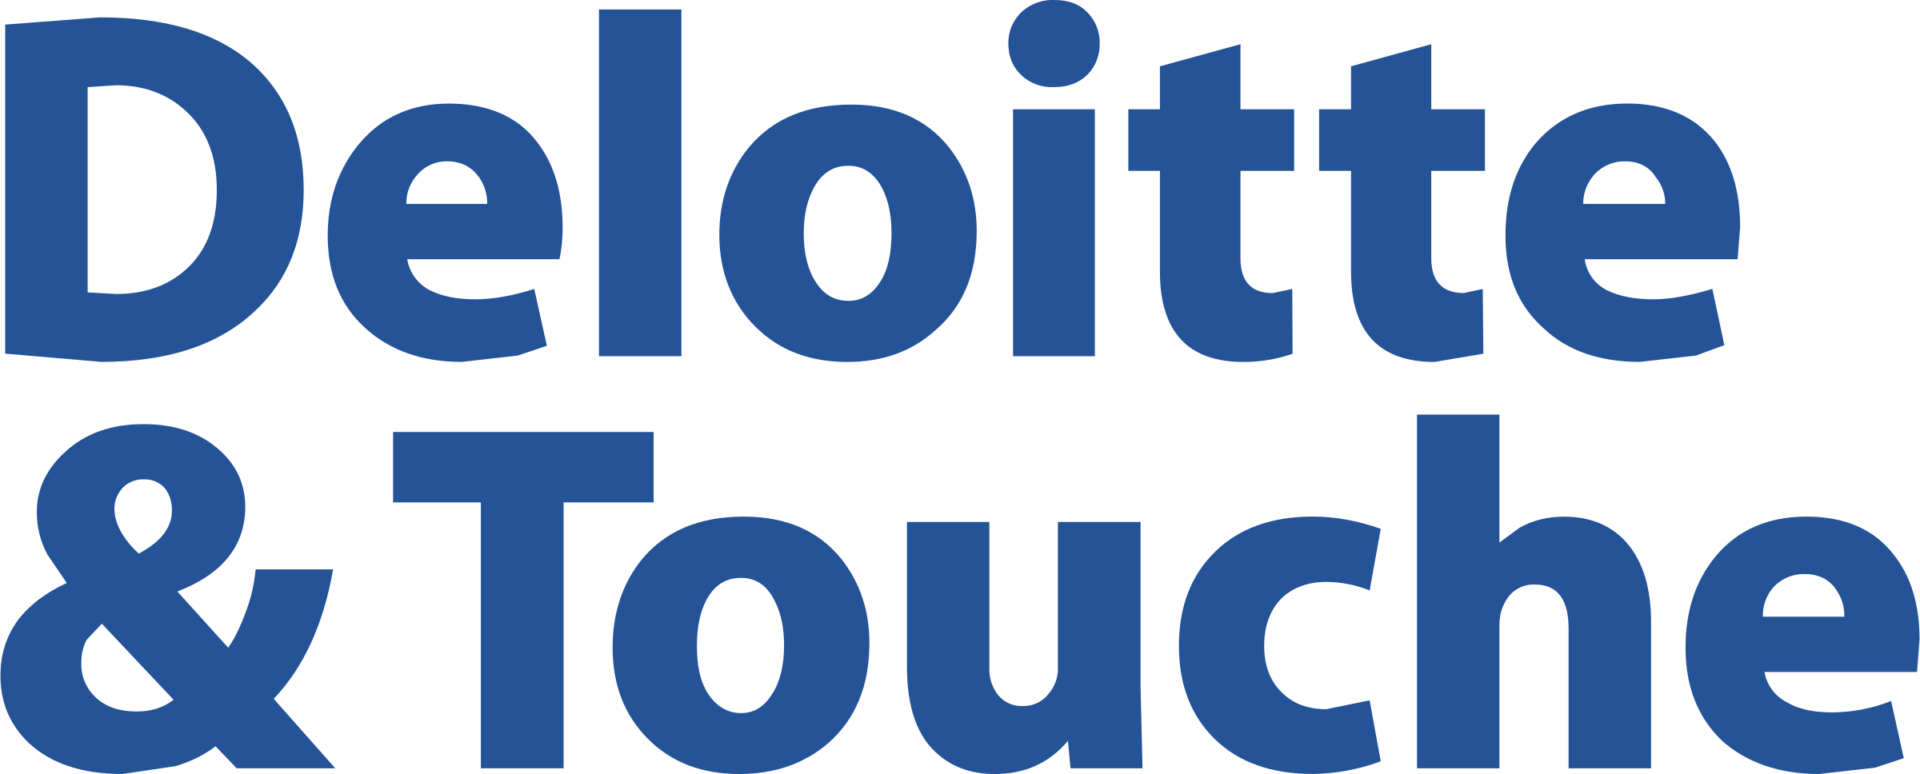 deloitte-touche-1-logo-png-transparent